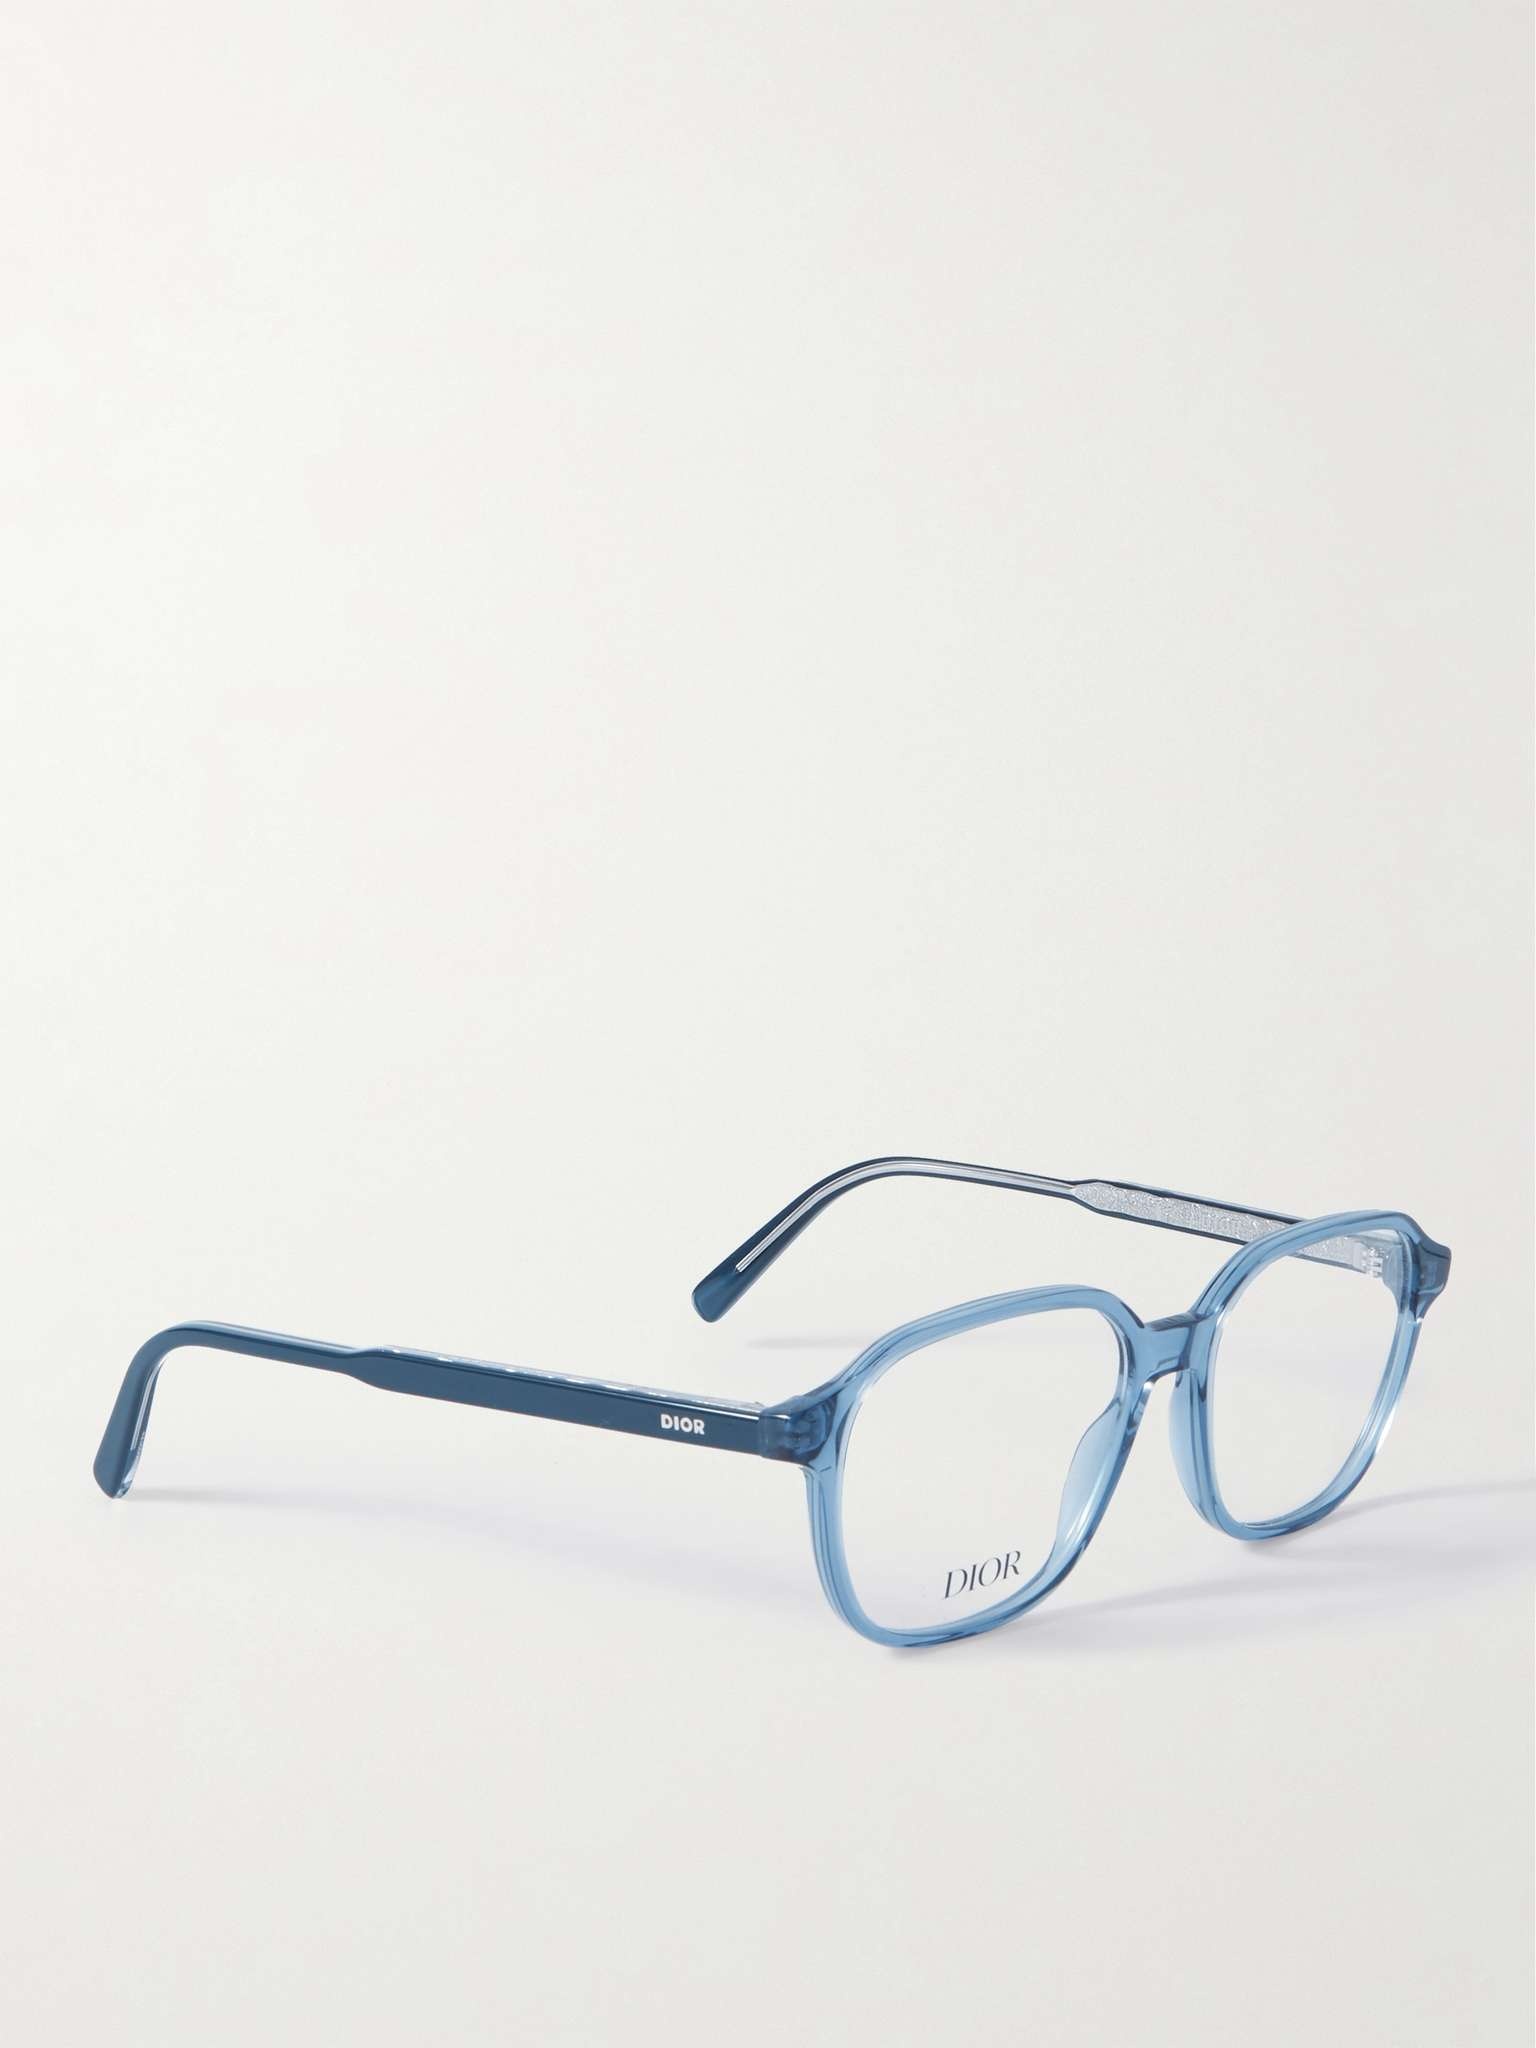 InDiorO S3I Square-Frame Tortoiseshell Acetate Optical Glasses - 3